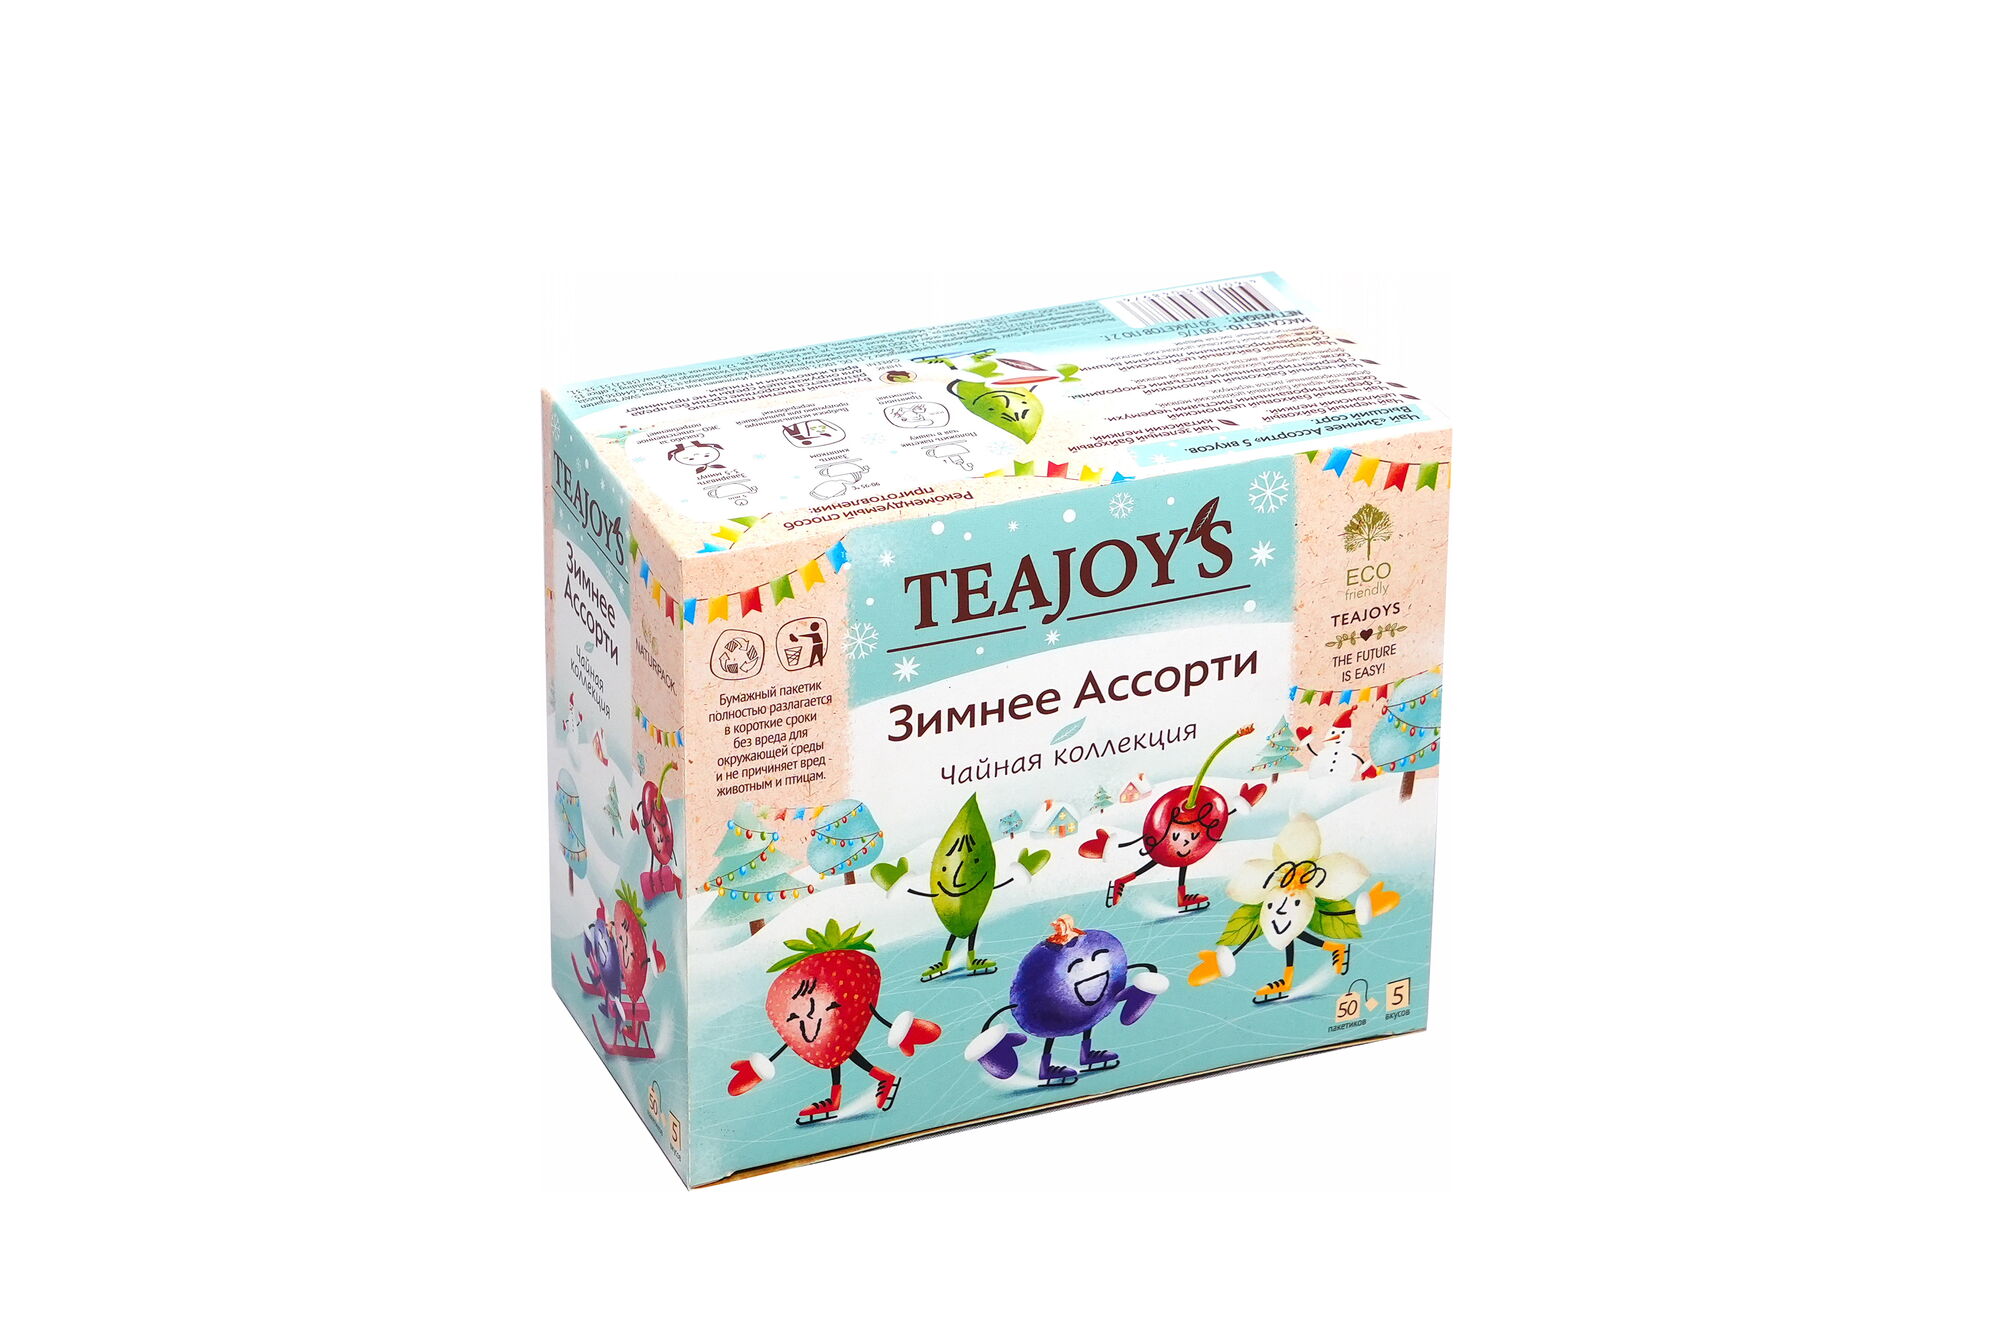 Чай TeaJoy`S Зимнее Ассорти 5 вкусов 50 пакетиков по 2 гр (в коробке 12 шт)